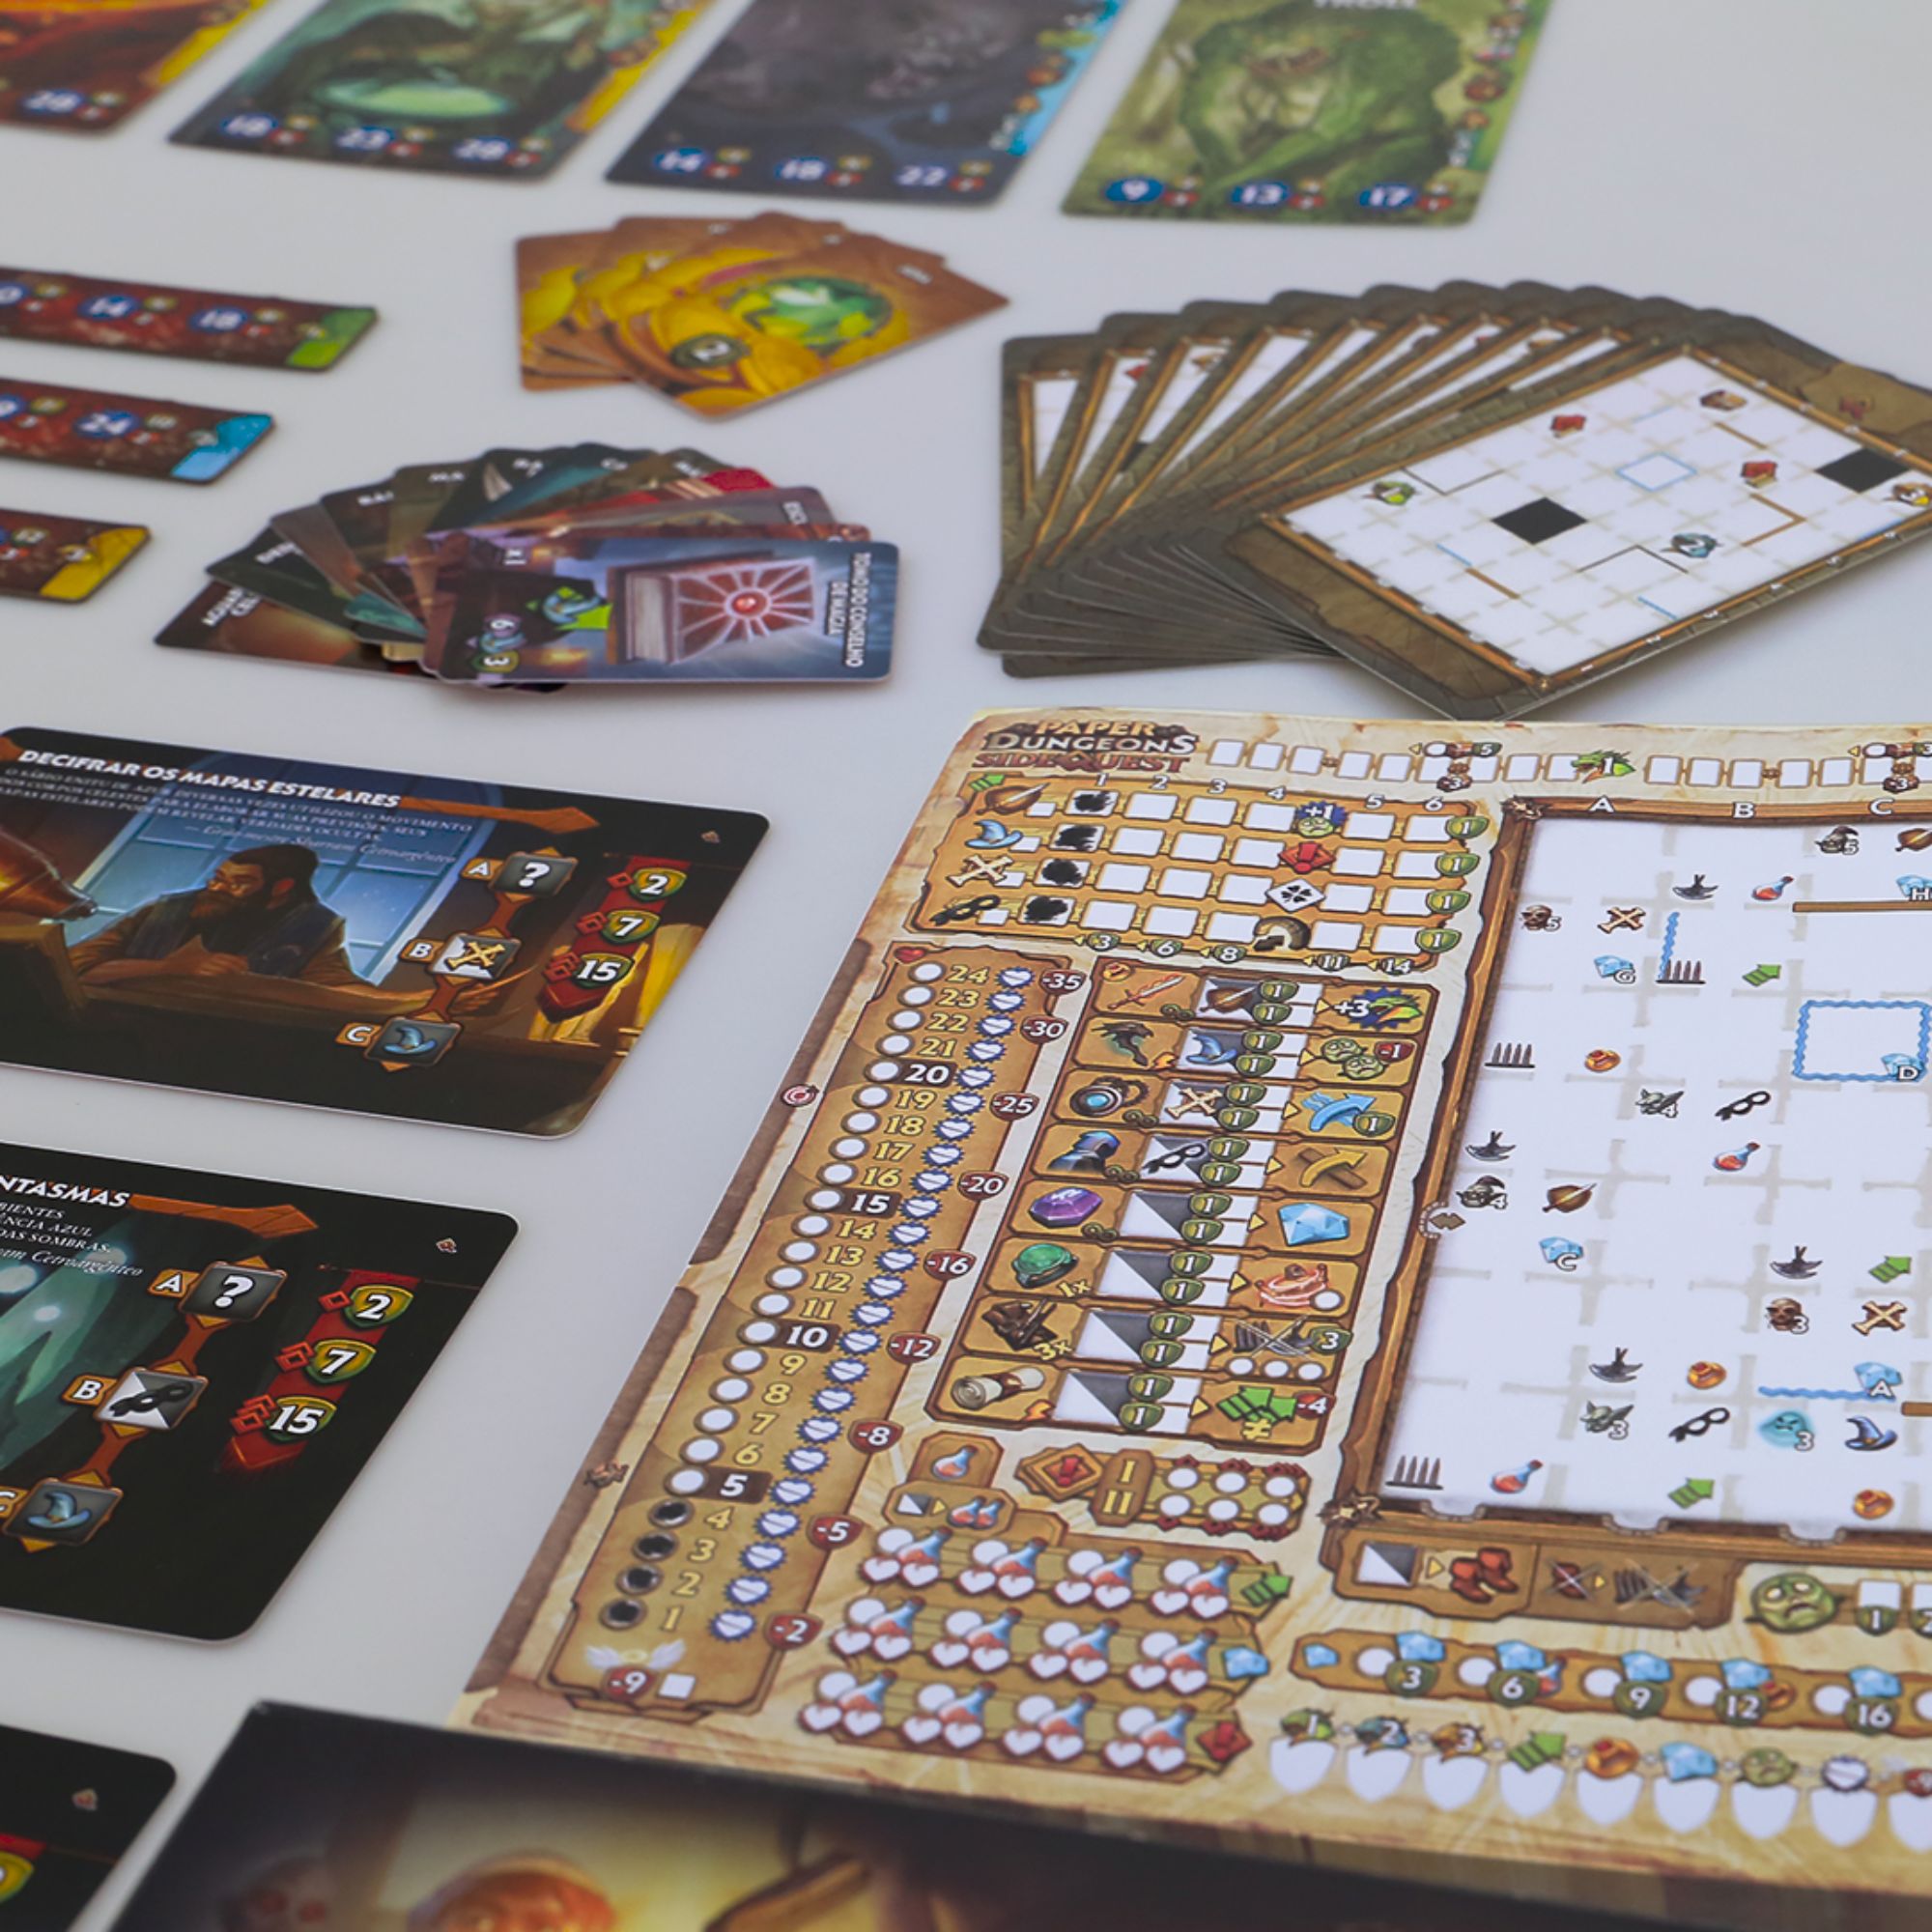 Paper Dungeons Missões Extras (Cartas Promo) Jogos de Tabuleiro